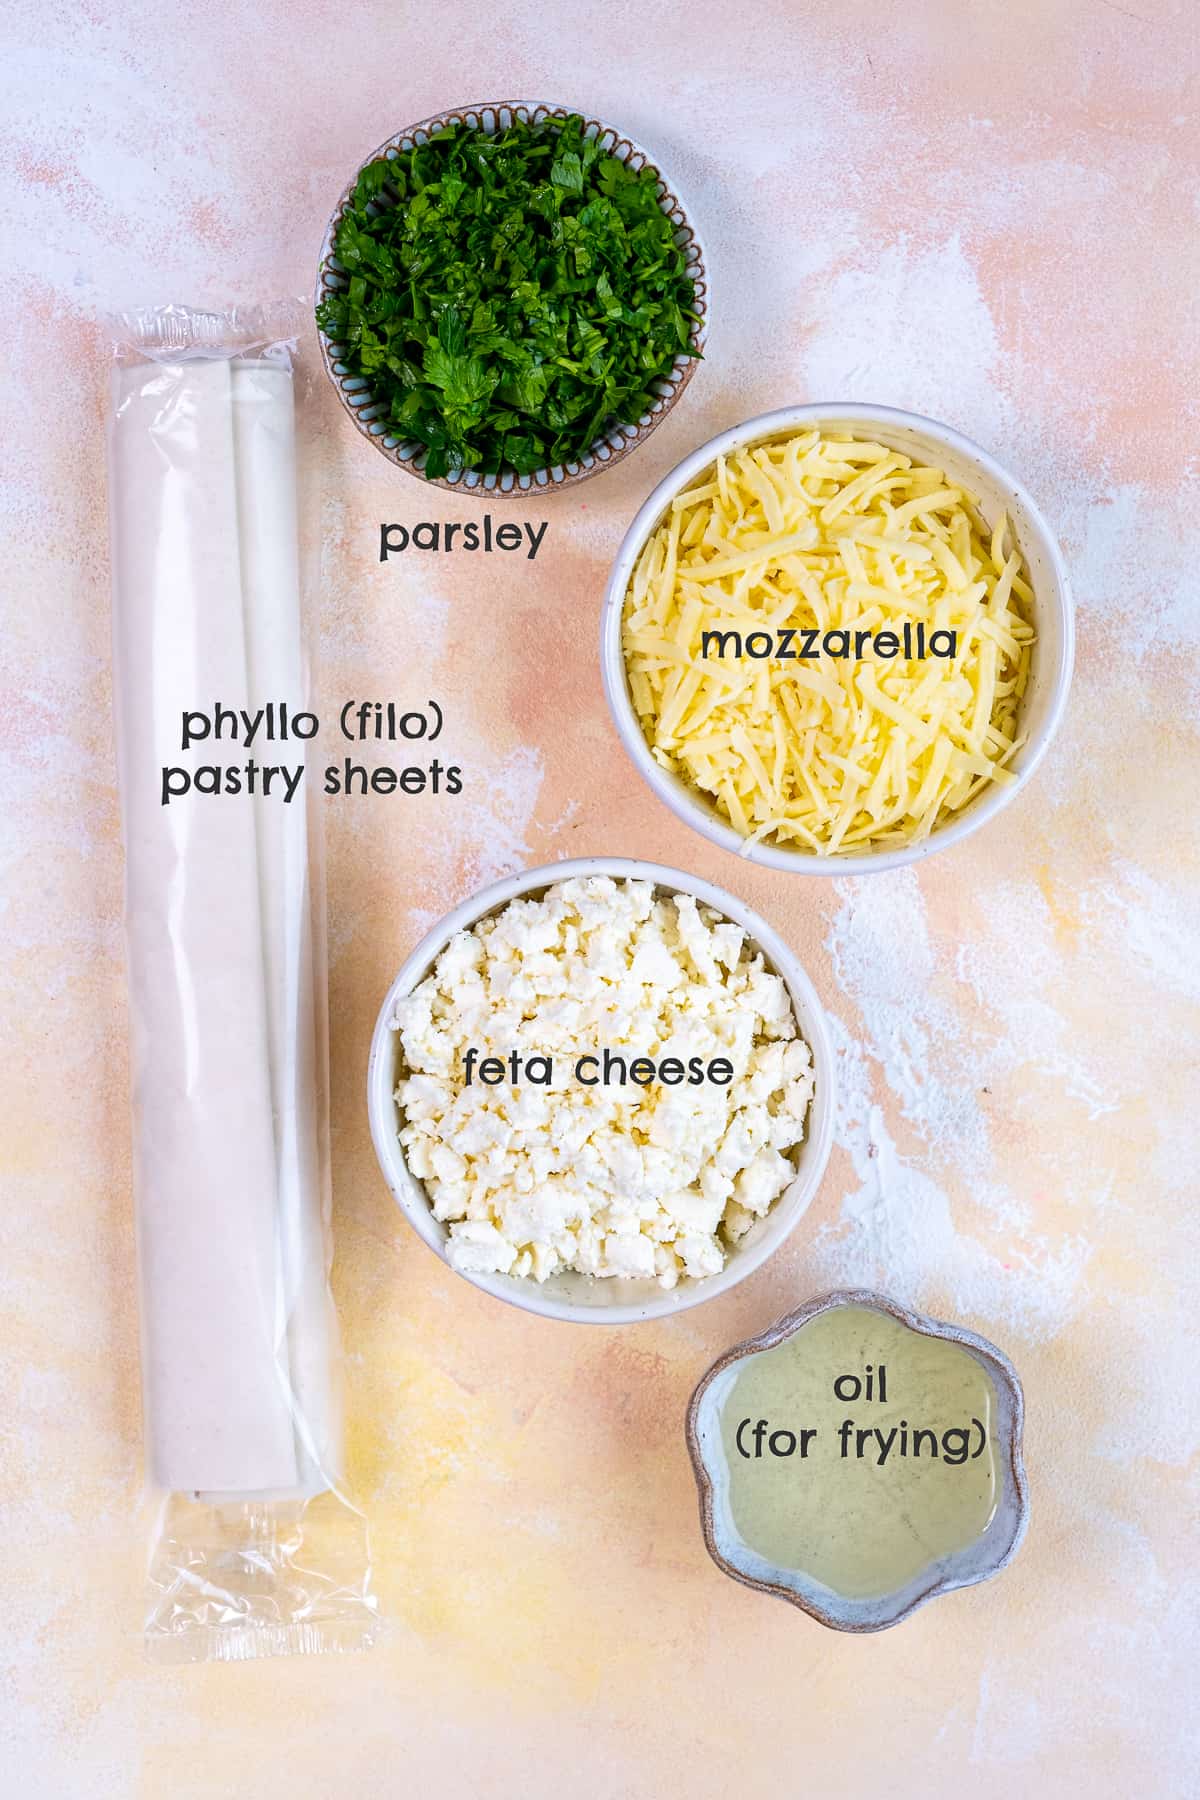 菲罗面团、磨碎的马苏里拉奶酪、碎菲达奶酪、欧芹和油放在不同的碗里，背景淡一点。